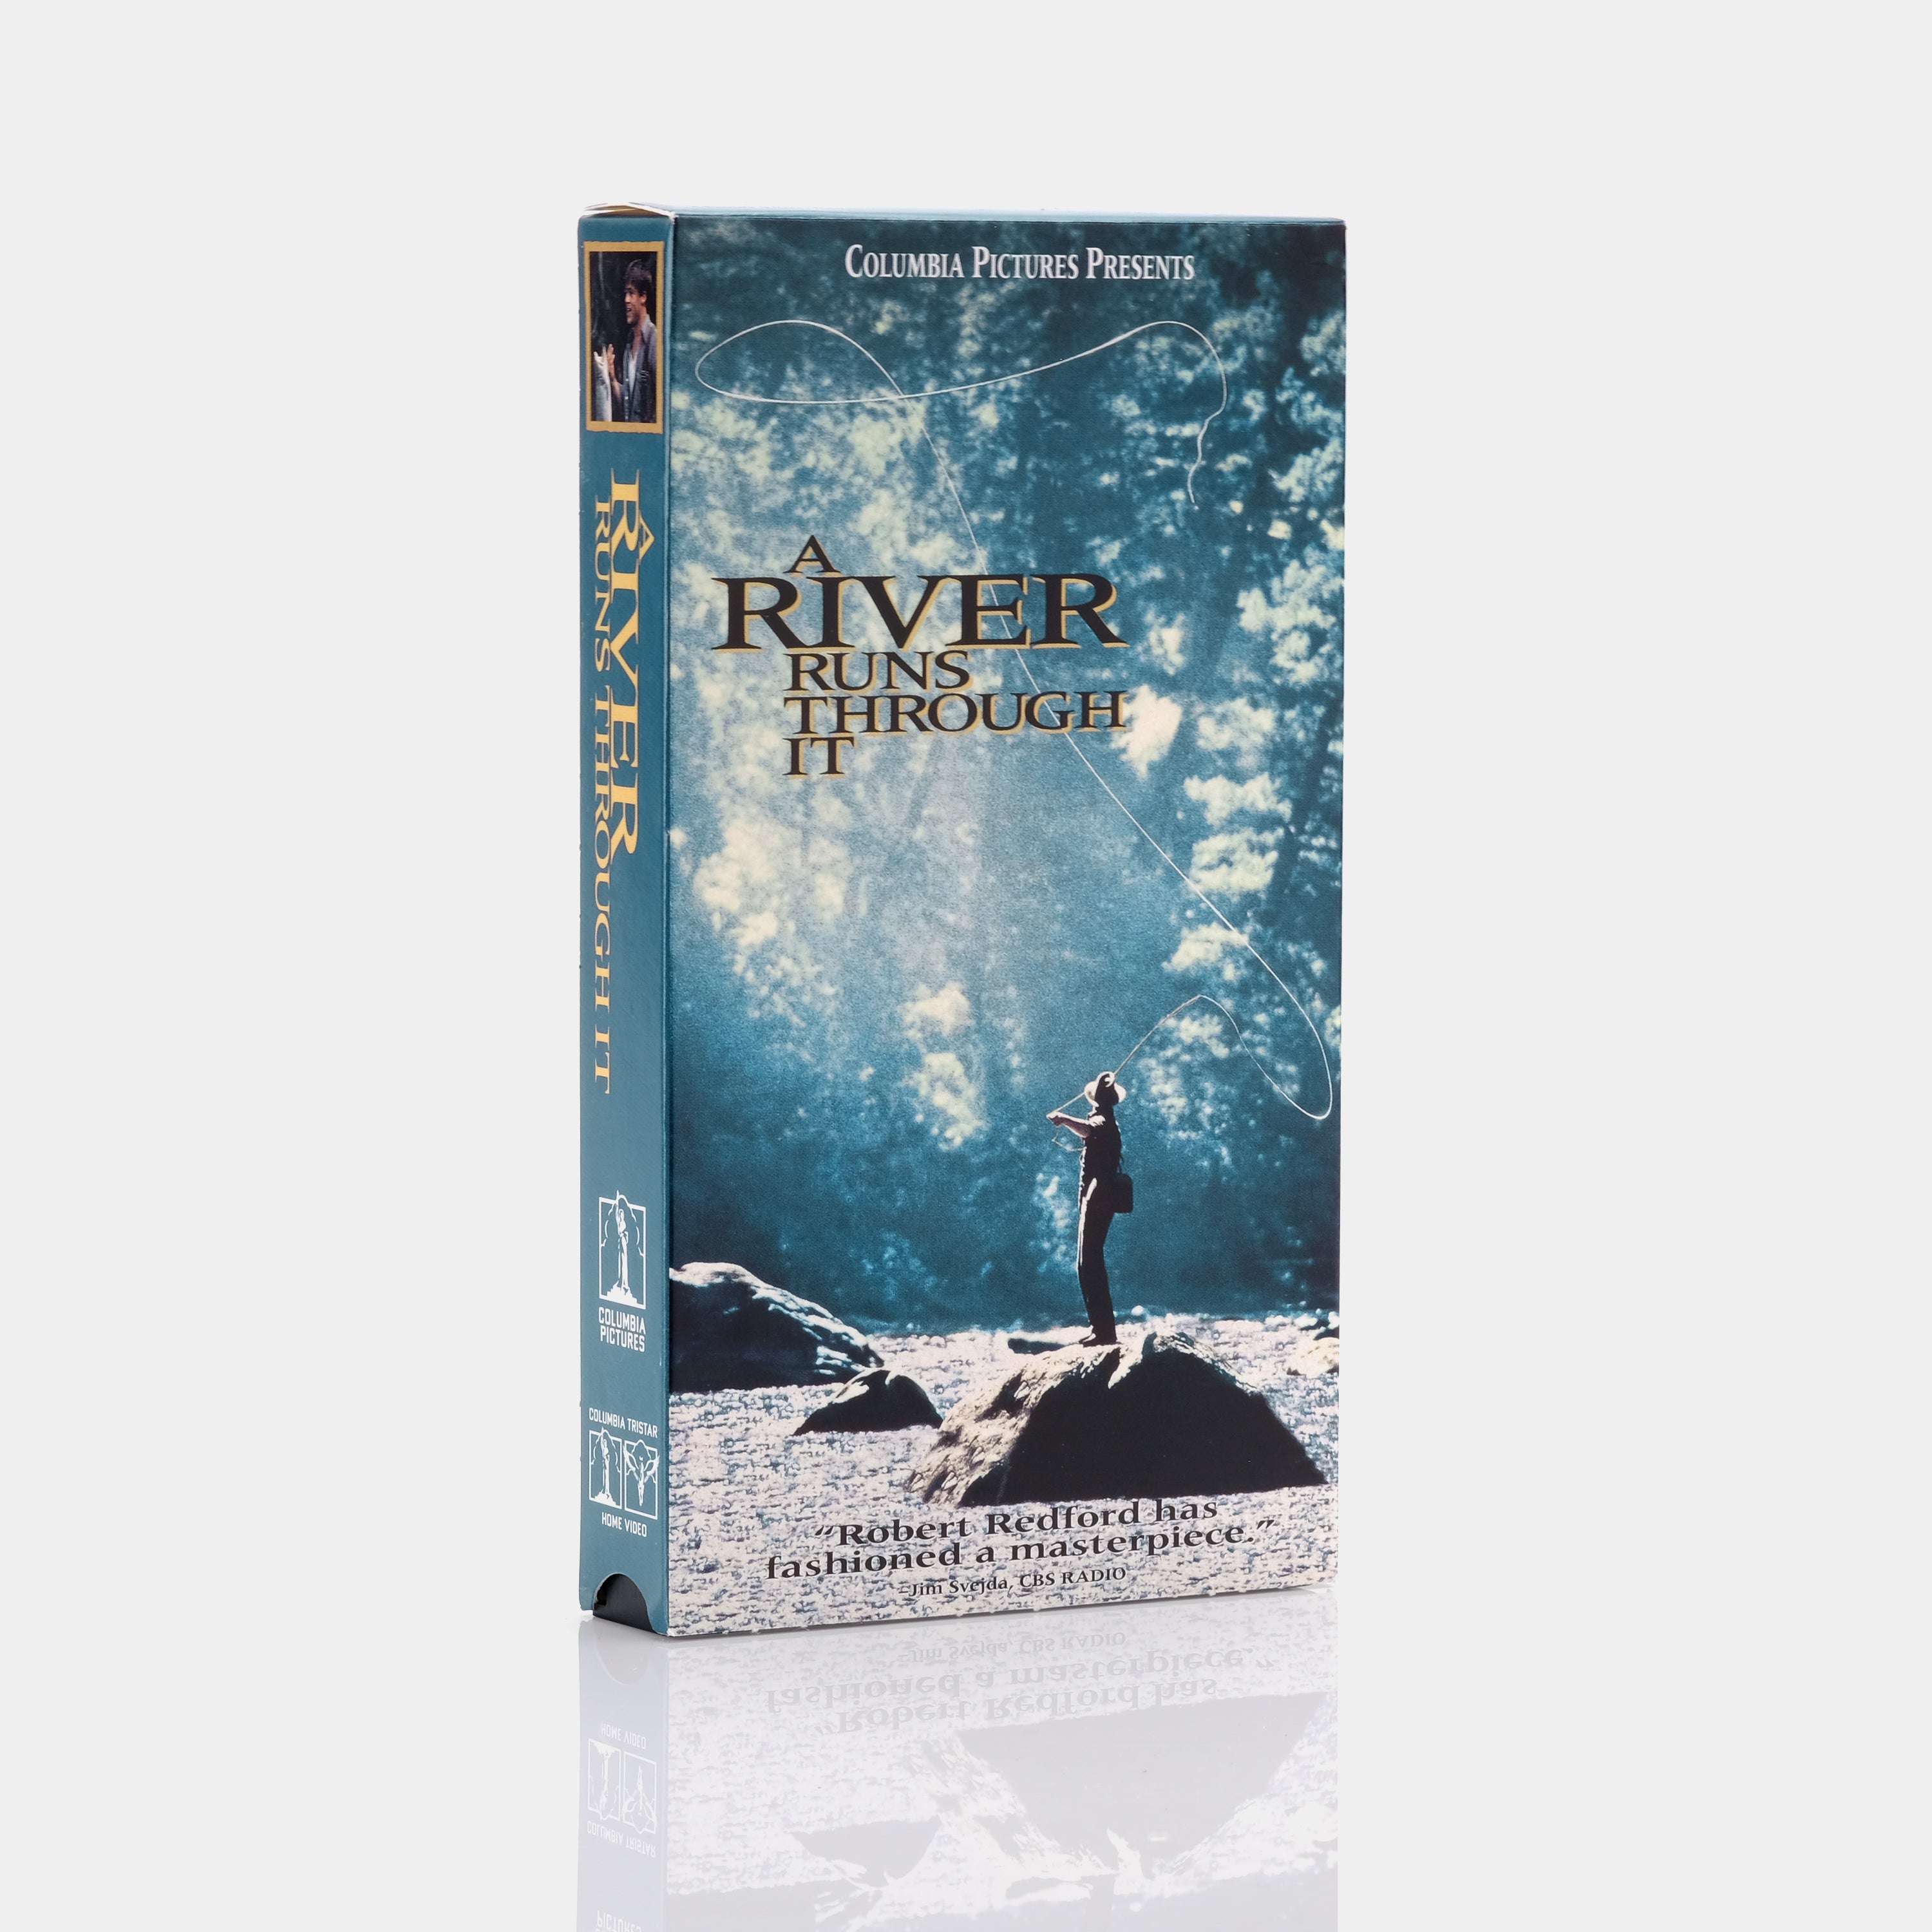 A River Runs Through It VHS Tape